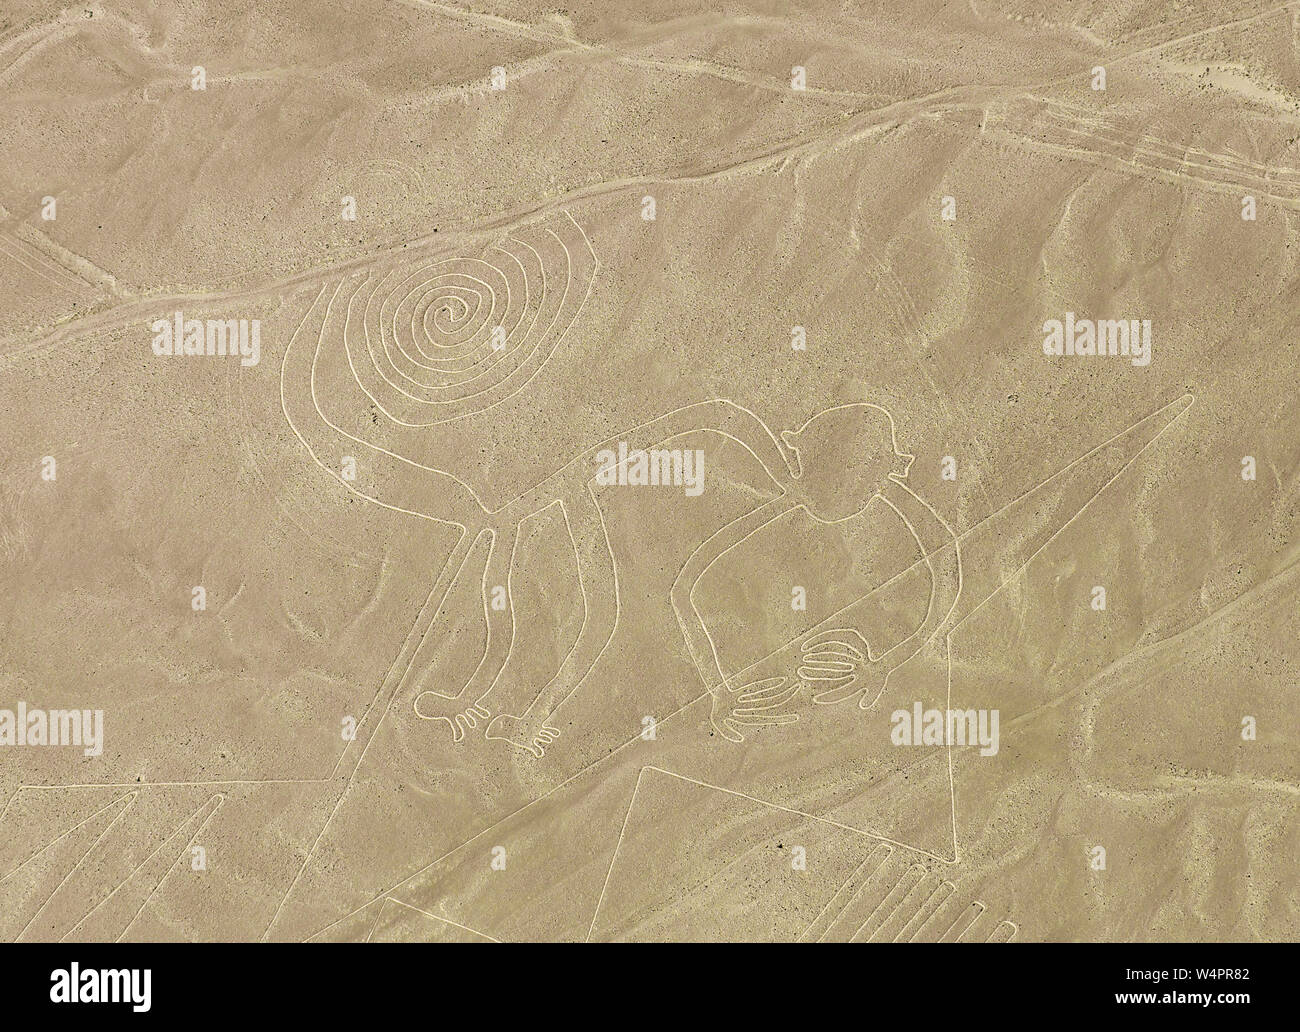 Le singe géoglyphe et archéologiques dans la conception de dessin le désert côtier du Pérou connu sous le nom de la mystérieuse de Nazca (près de la ville de Nazca, au Pérou. Banque D'Images